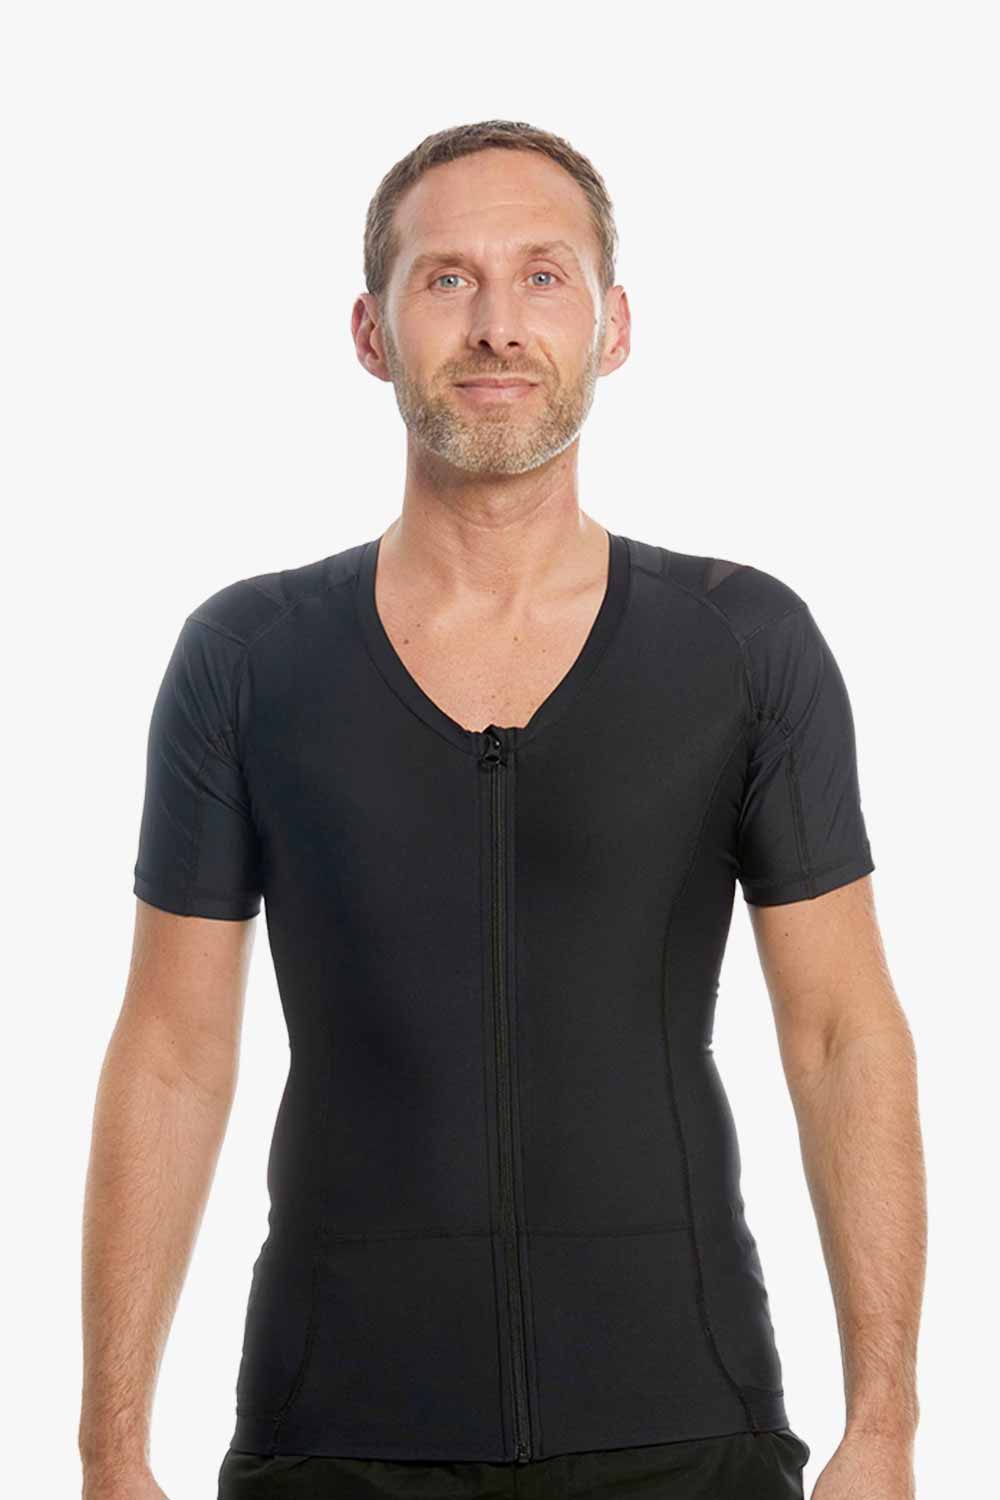 sort posture shirt med lynlås til mænd